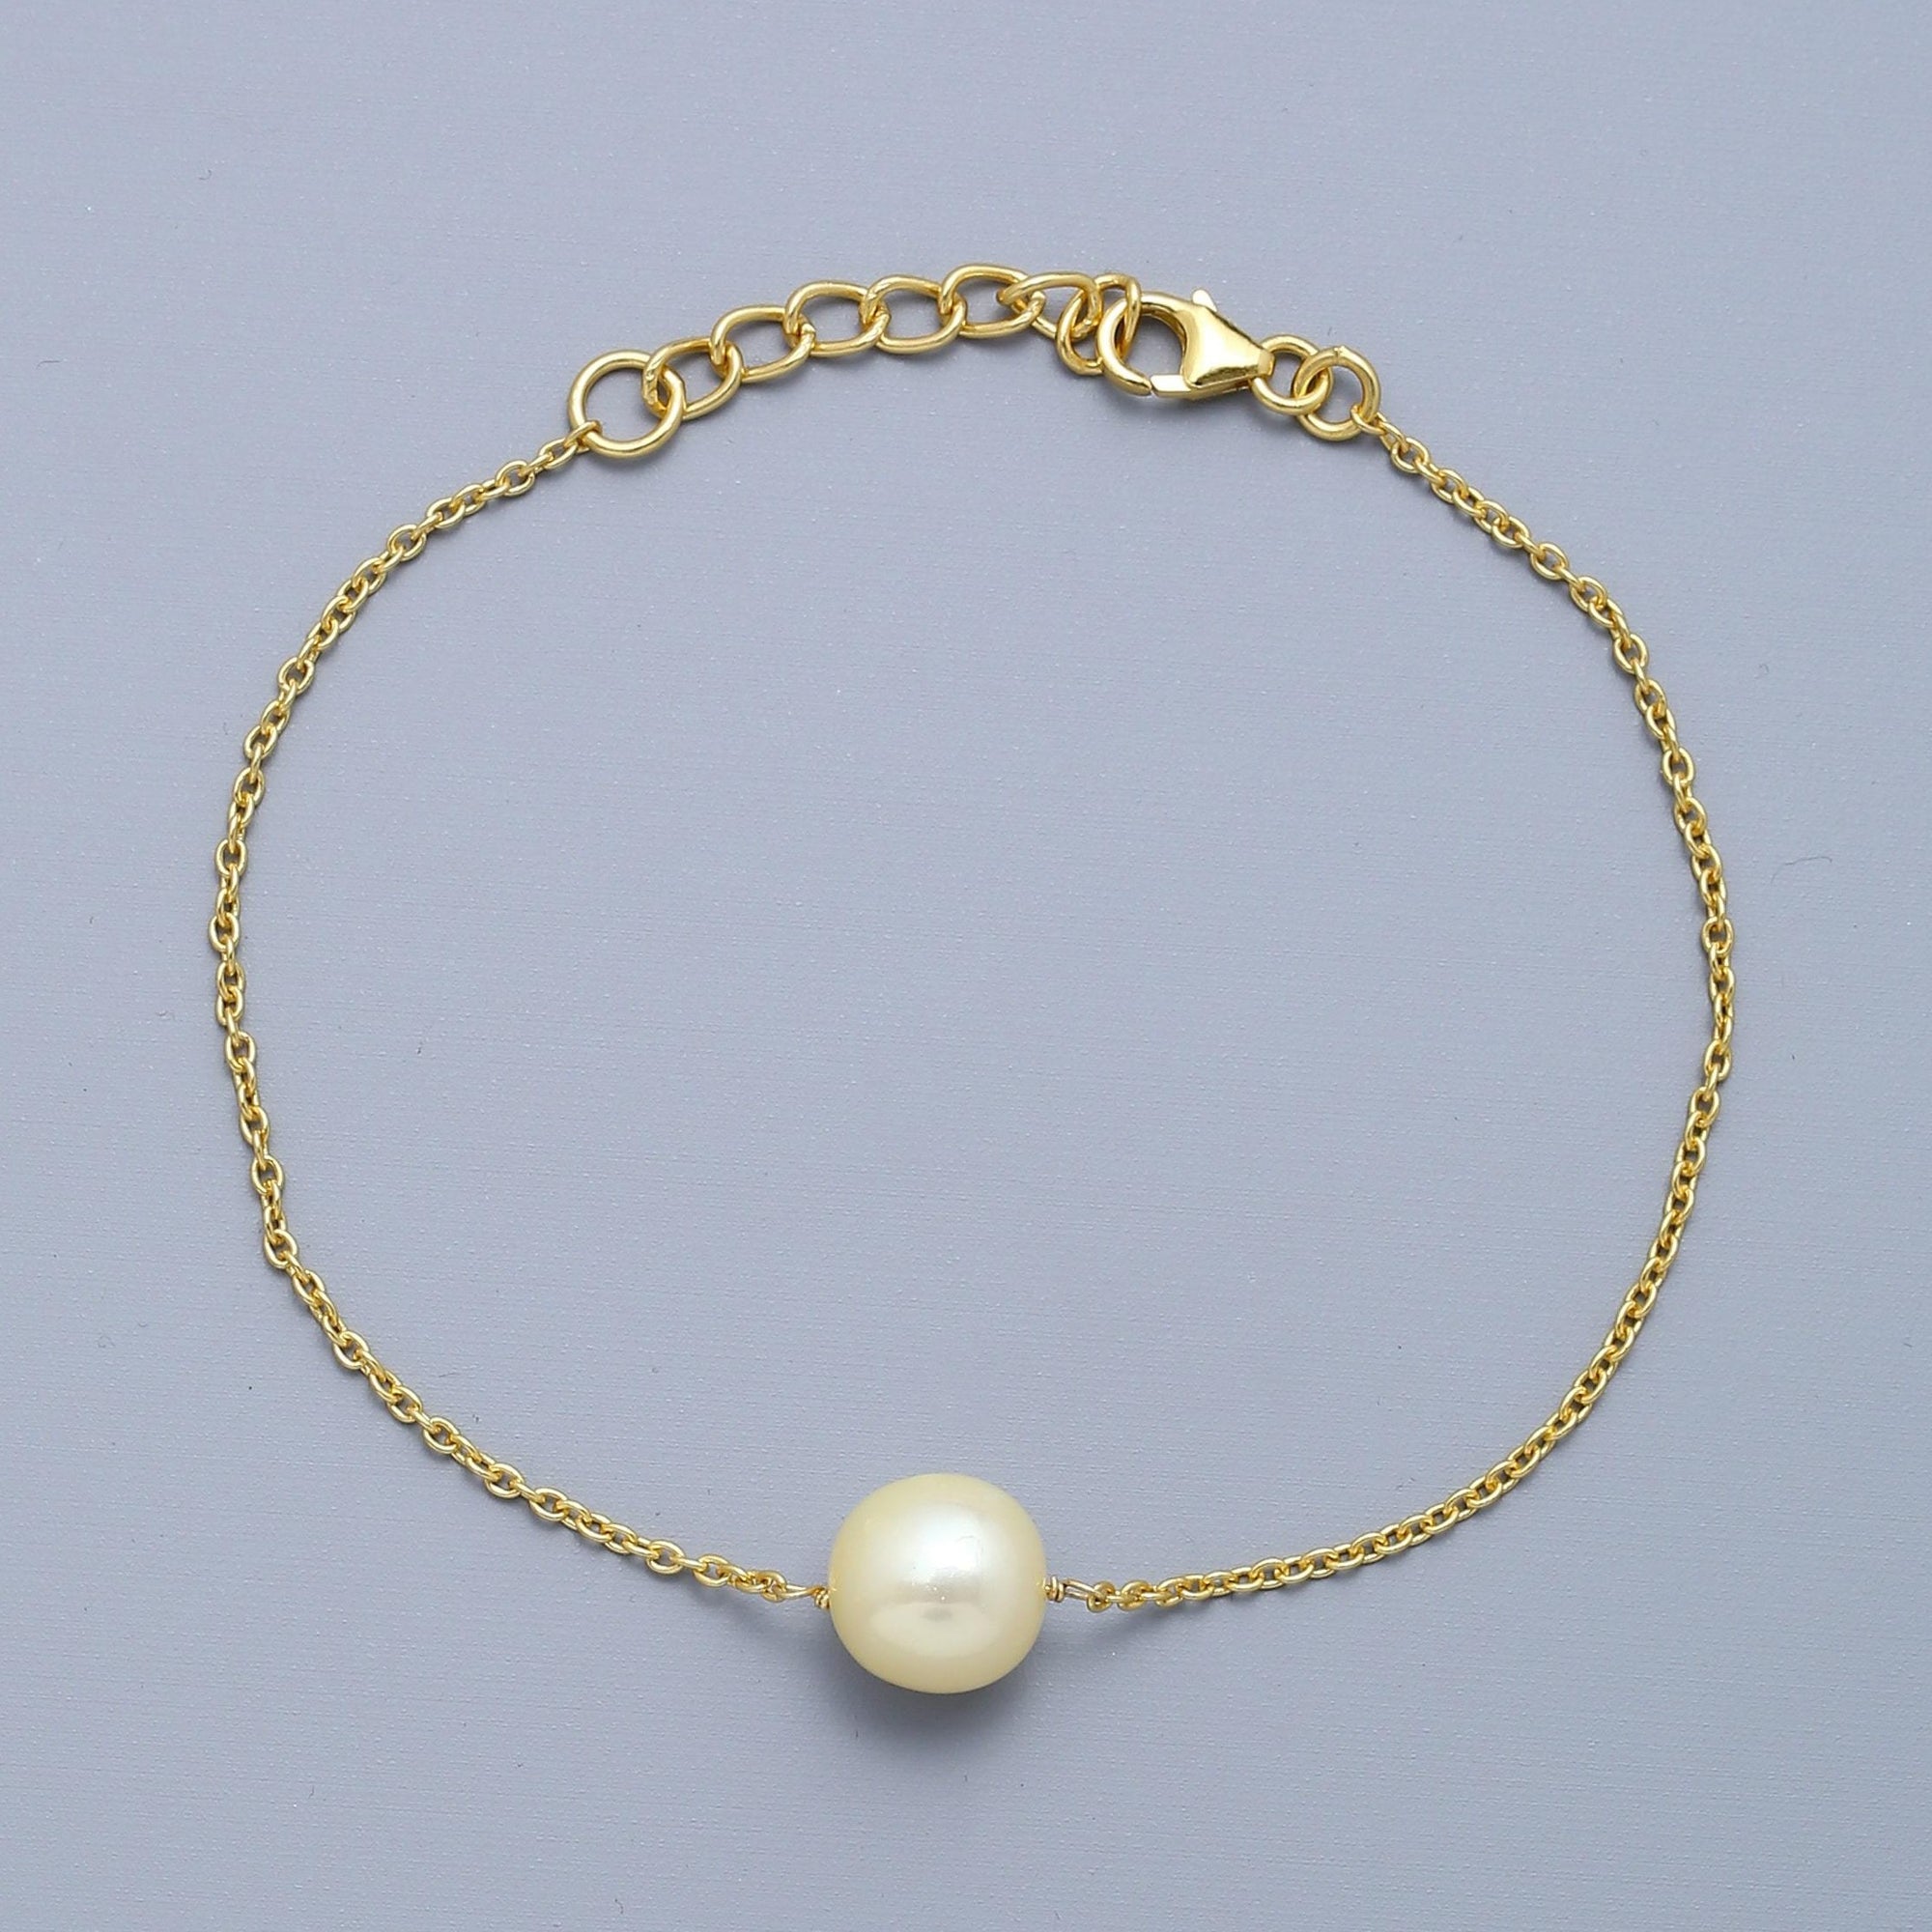 Pearl Bracelet - Buy Pearl Bracelets Online in India | Myntra